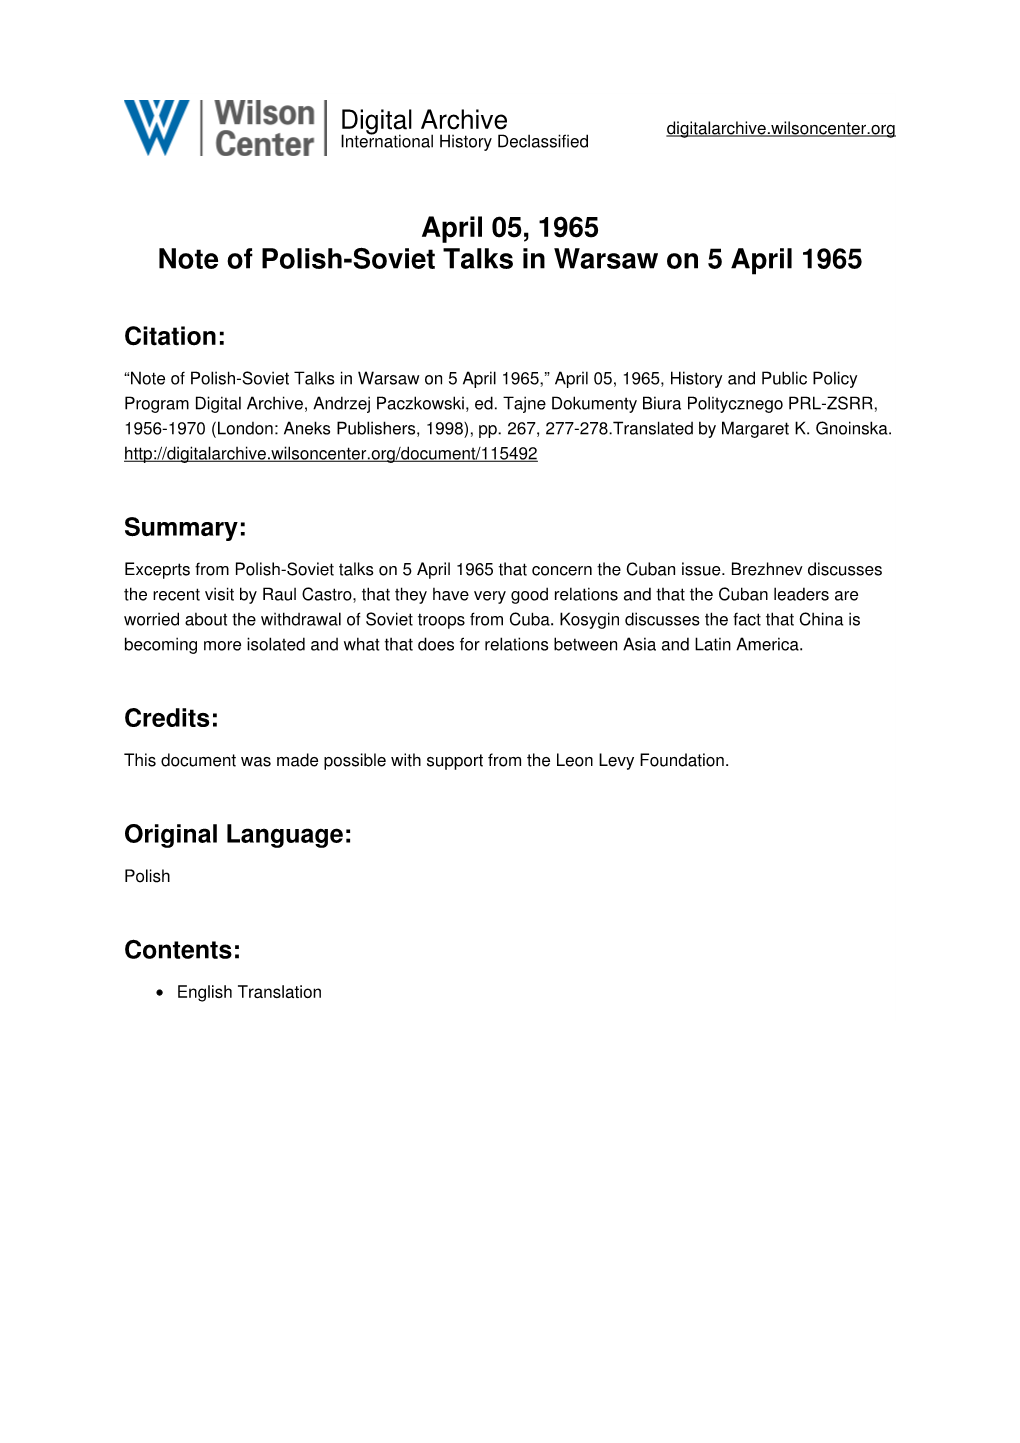 April 05, 1965 Note of Polish-Soviet Talks in Warsaw on 5 April 1965